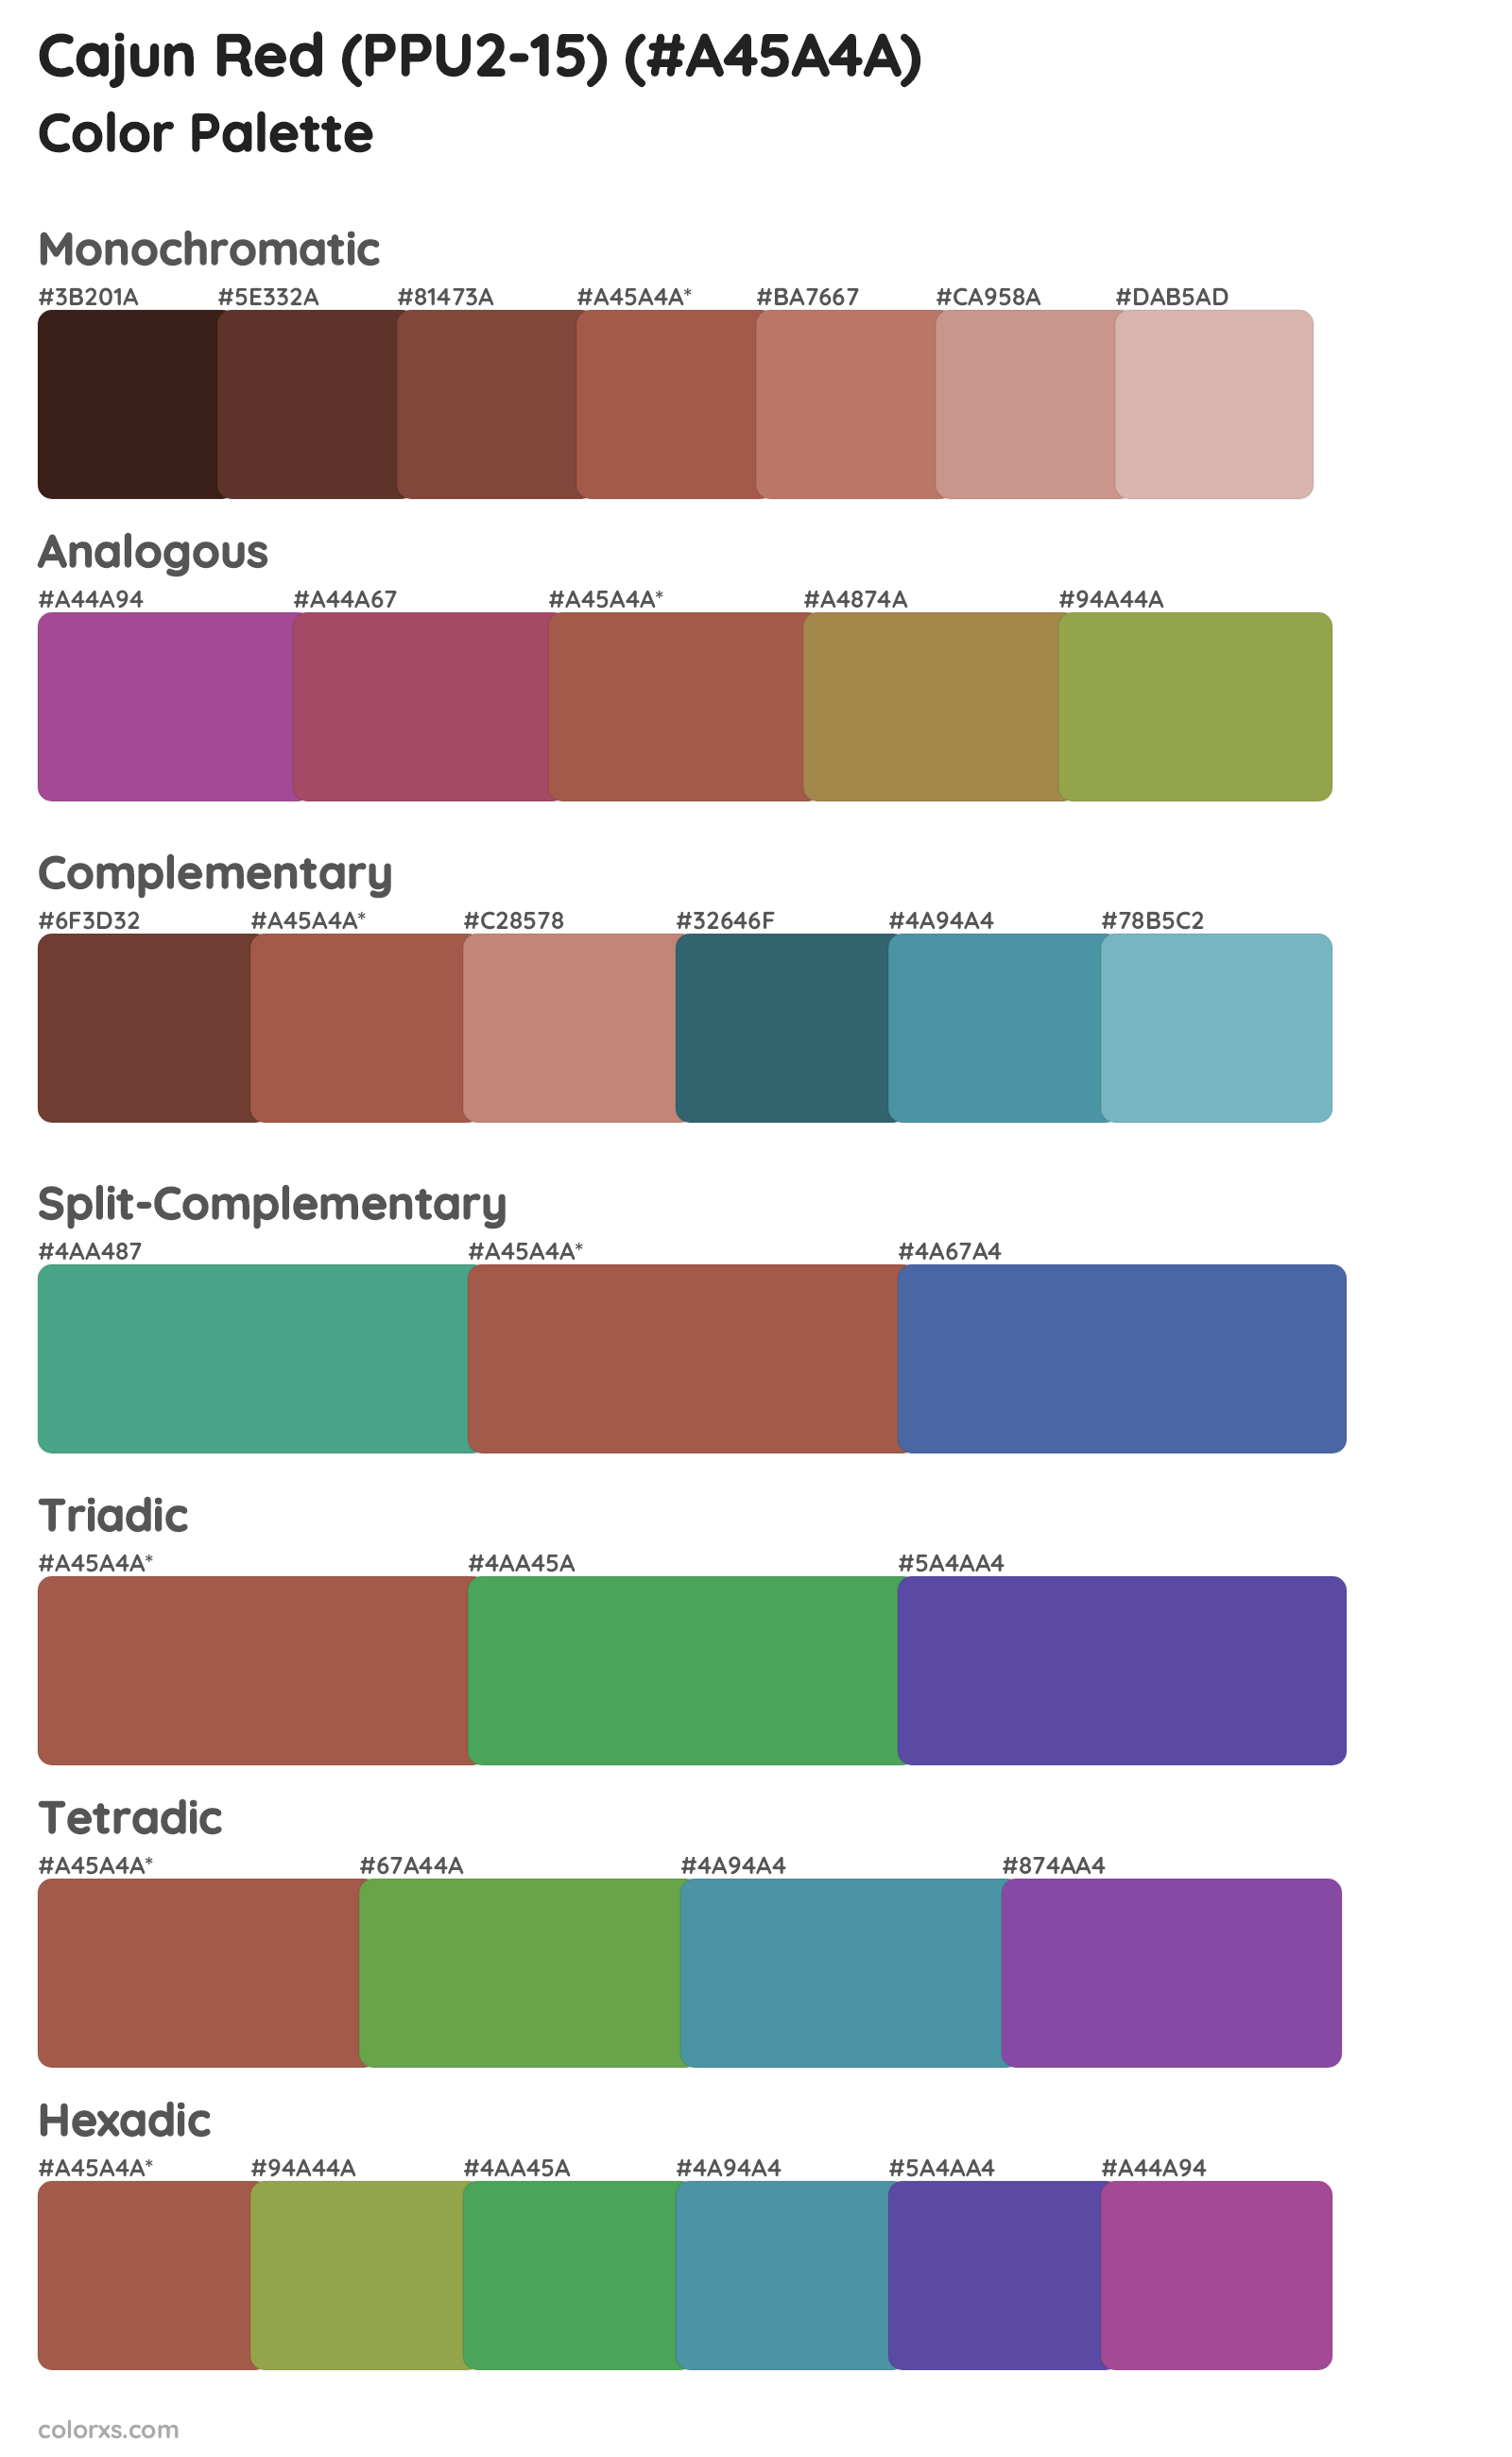 Cajun Red (PPU2-15) Color Scheme Palettes